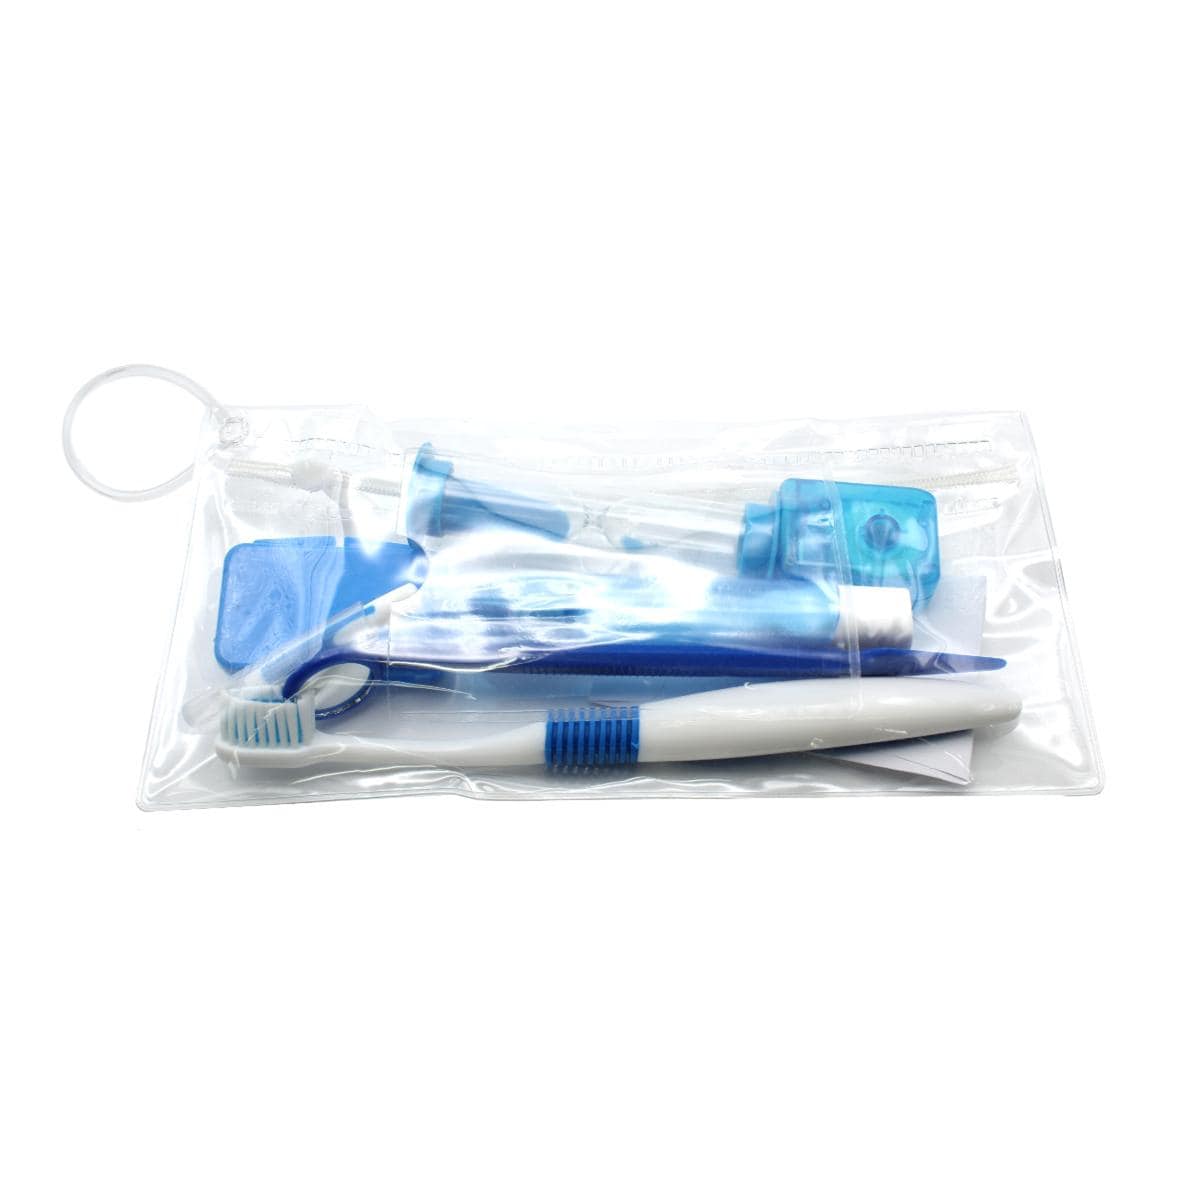 Patient Care Kits - Blue, 10 stuks